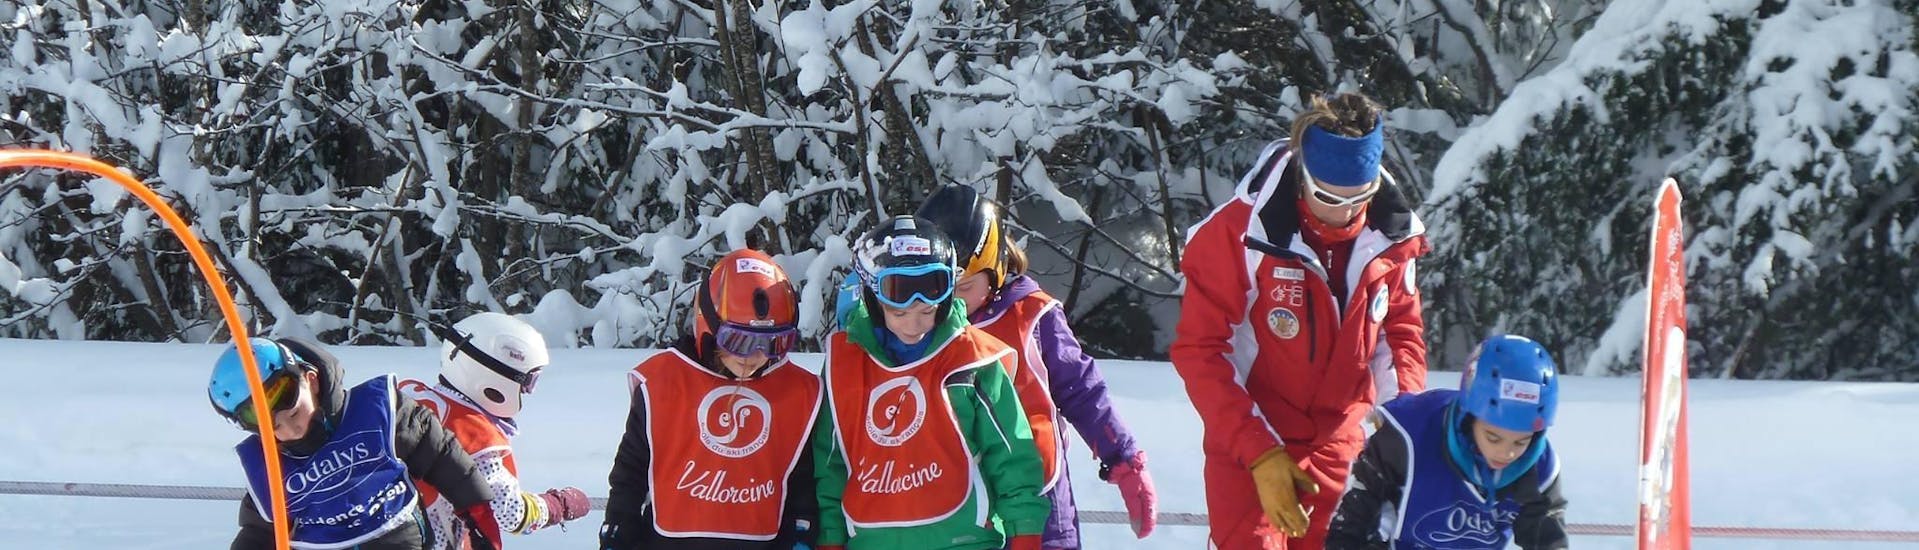 Lezioni di sci per bambini (3-4 anni) a Vallorcina/La Poya.